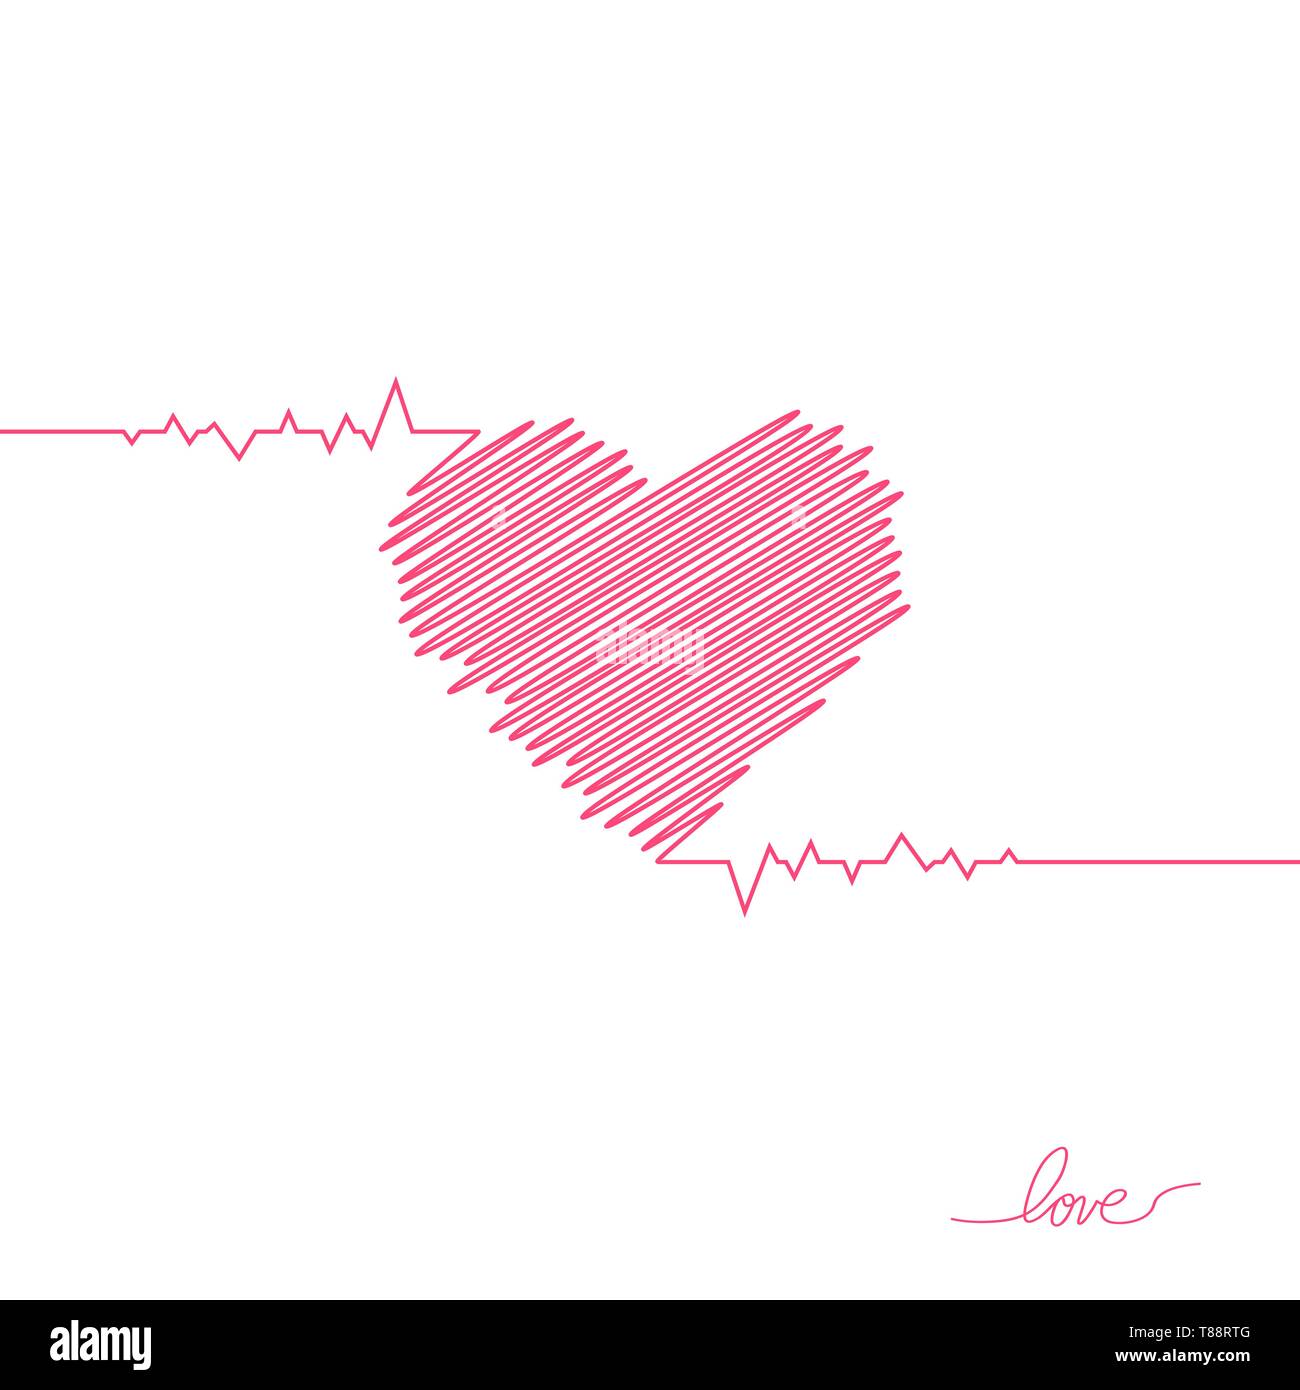 Herz-Impuls. Roten und weißen Farben. Heartbeat Lone, Elektrokardiogramm. Schöne healthcare, medizinischen Hintergrund. Einfache moderne Design. Symbol. Zeichen oder Logos Stock Vektor